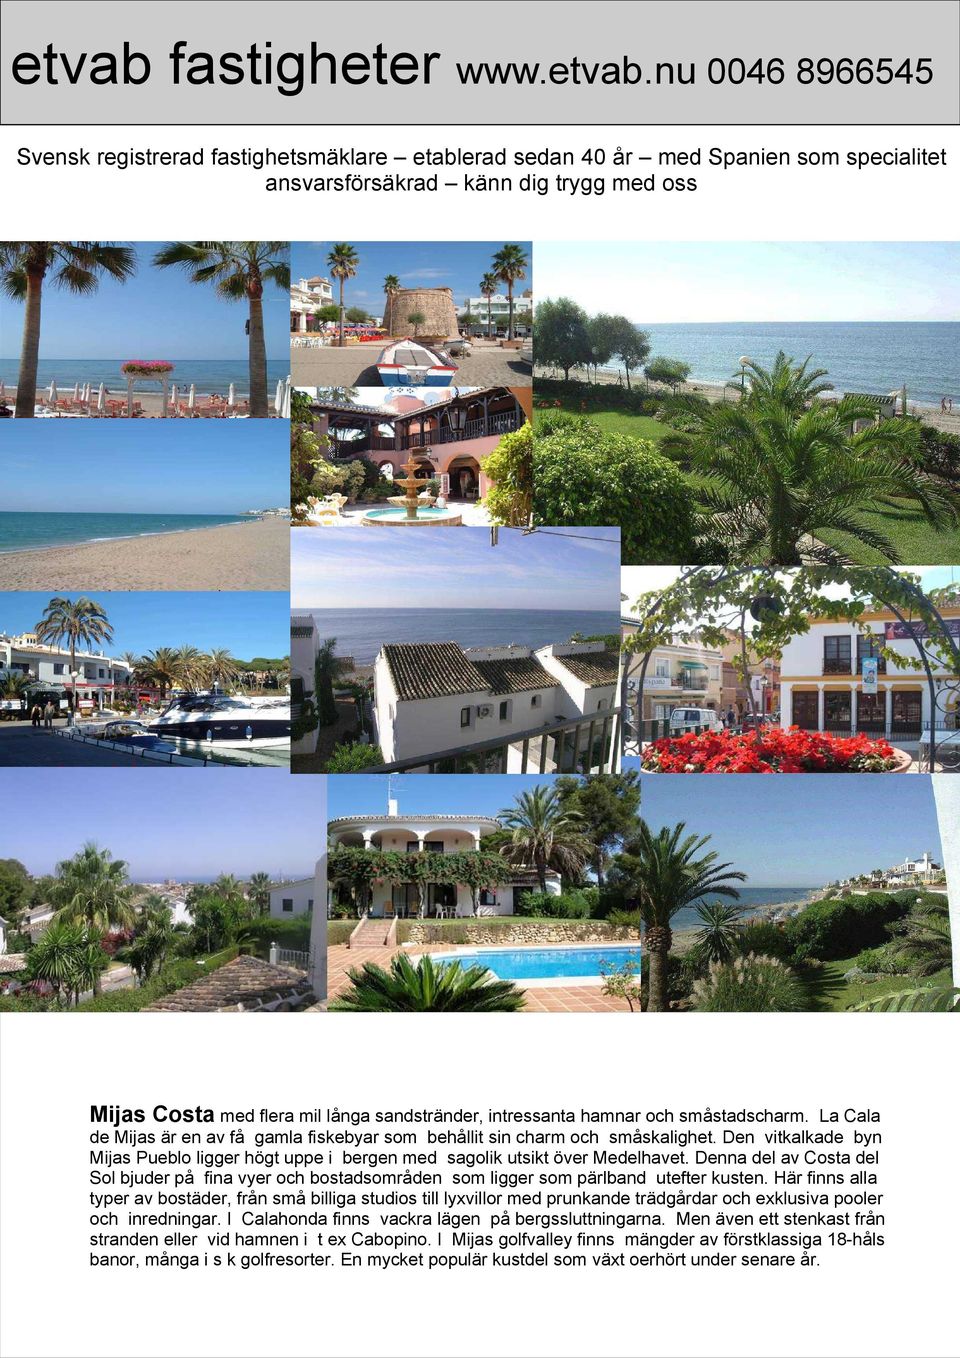 Denna del av Costa del Sol bjuder på fina vyer och bostadsområden som ligger som pärlband utefter kusten.